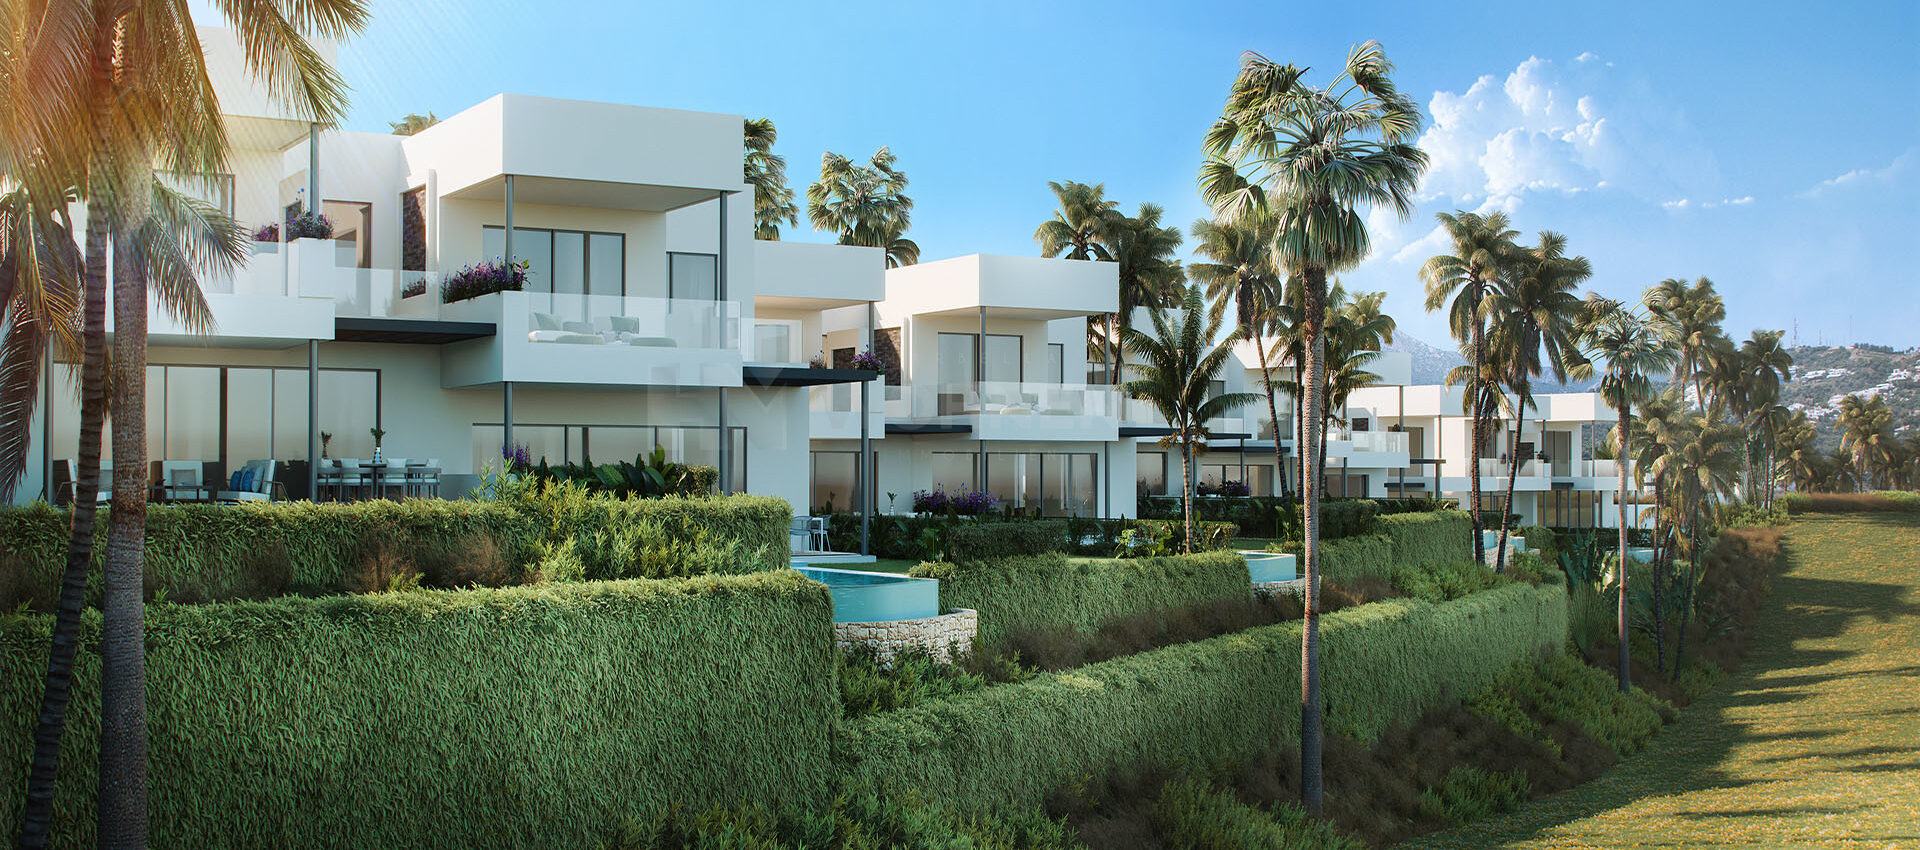 Villas adosadas ubicadas en una de las mejores zonas de Marbella